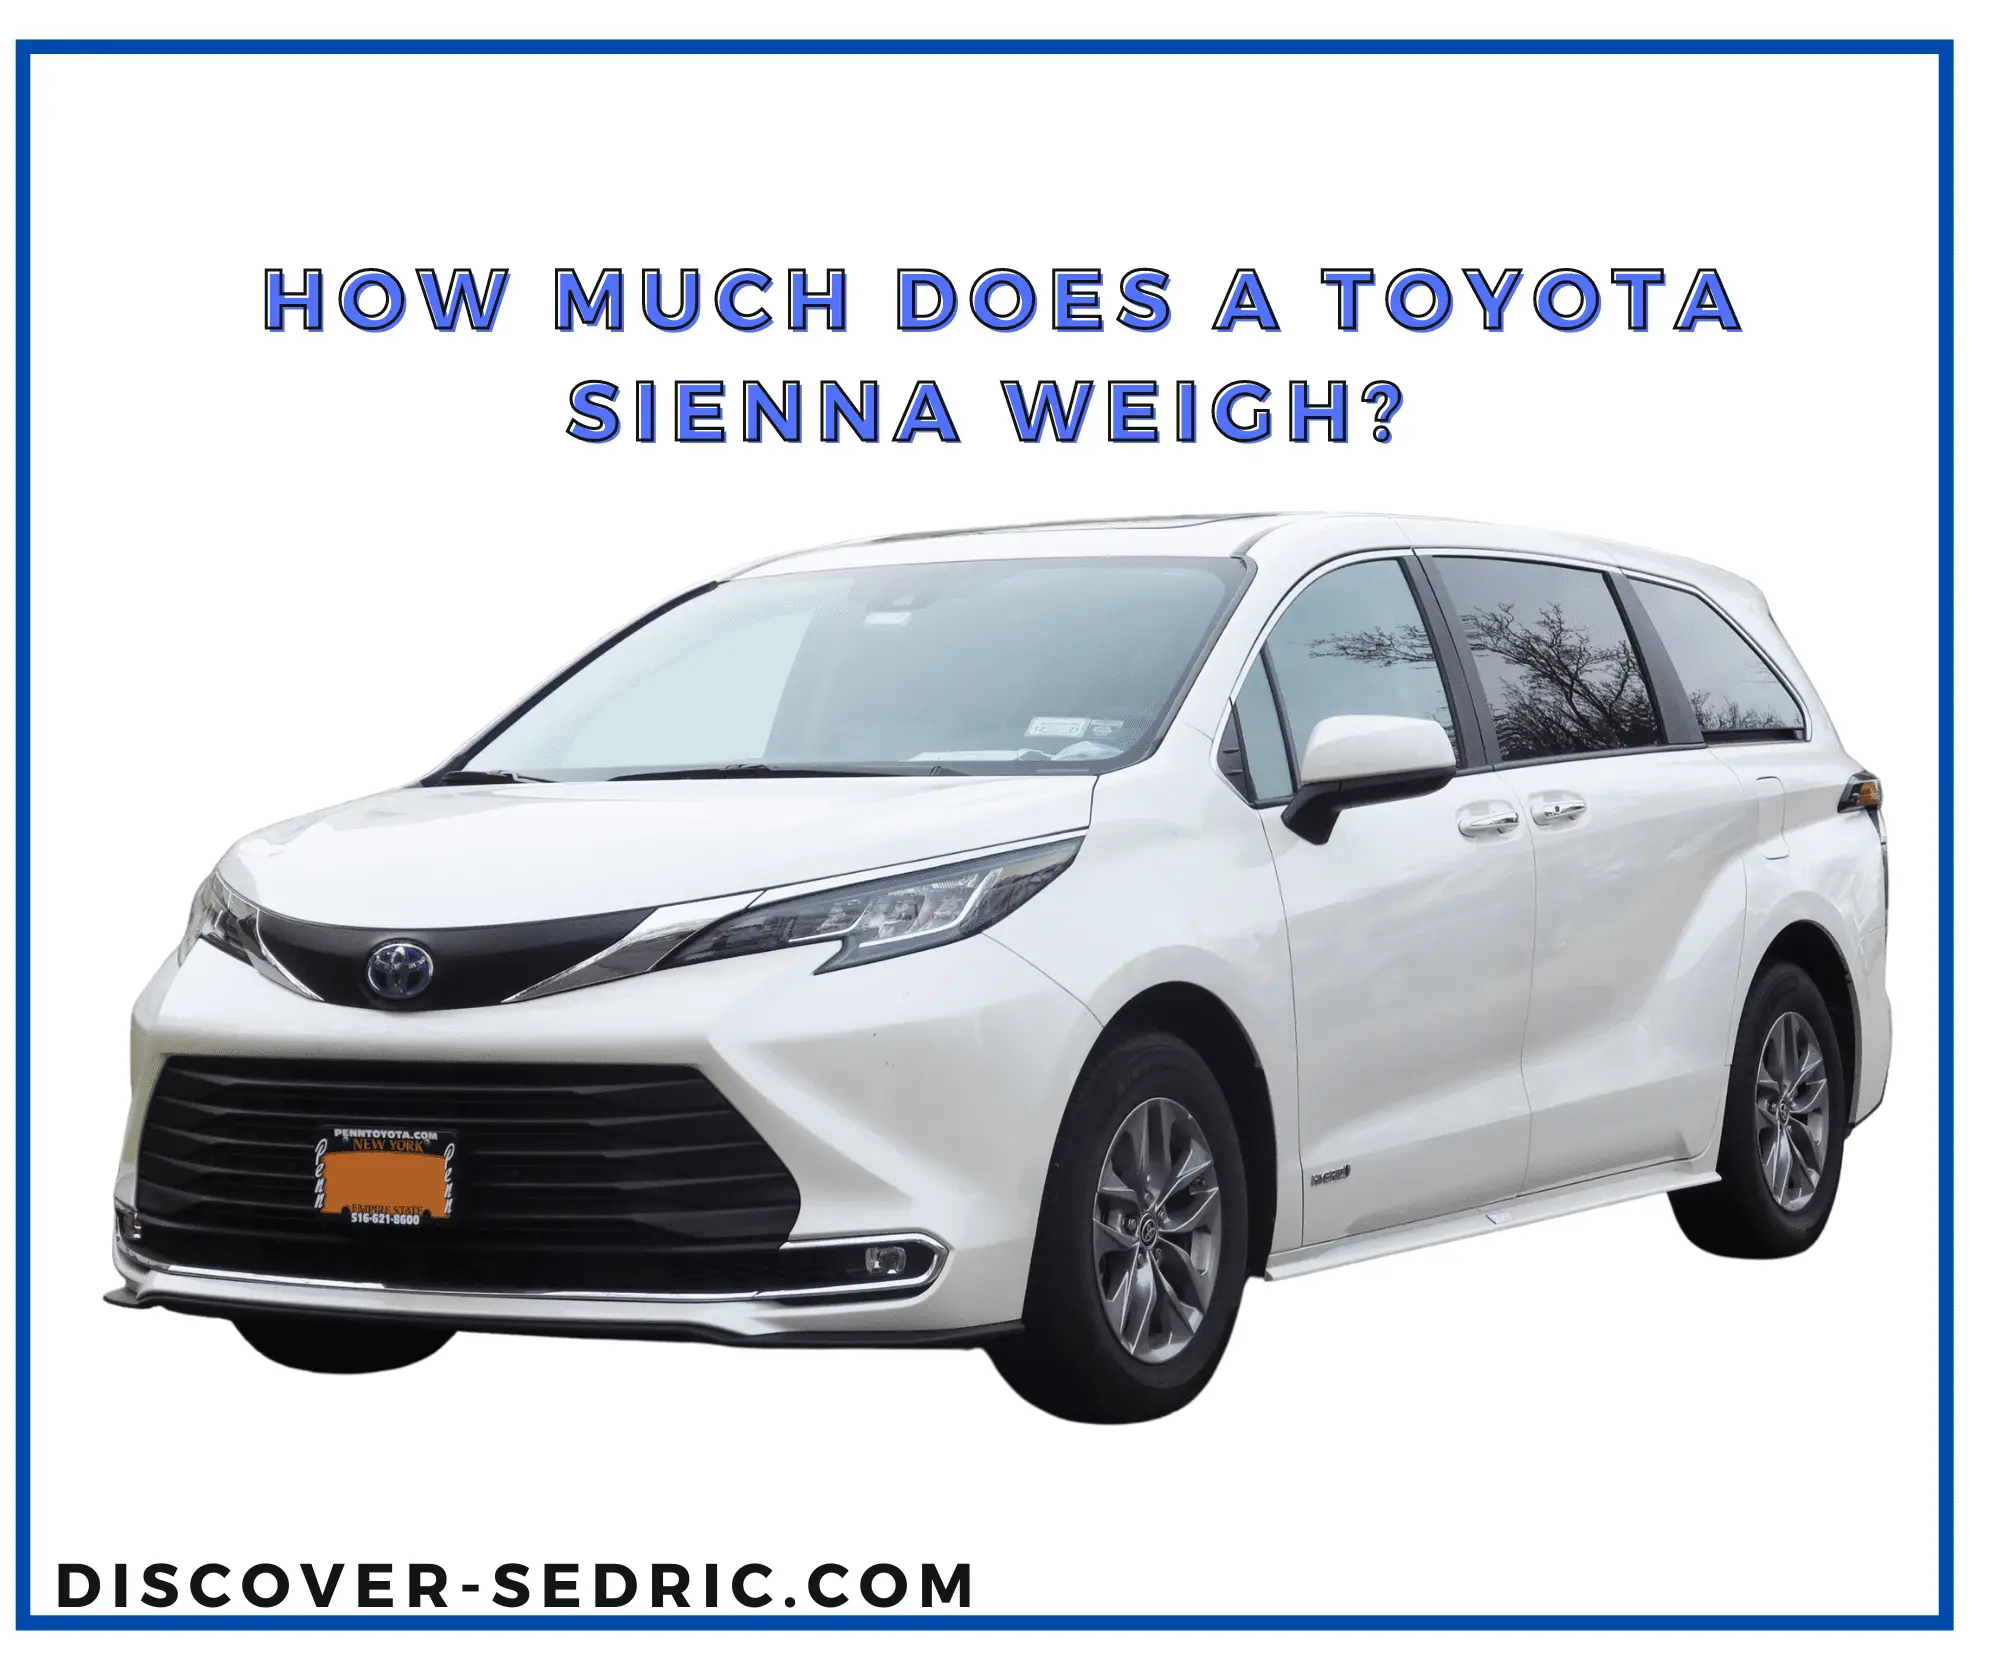 Toyota Sienna weigh